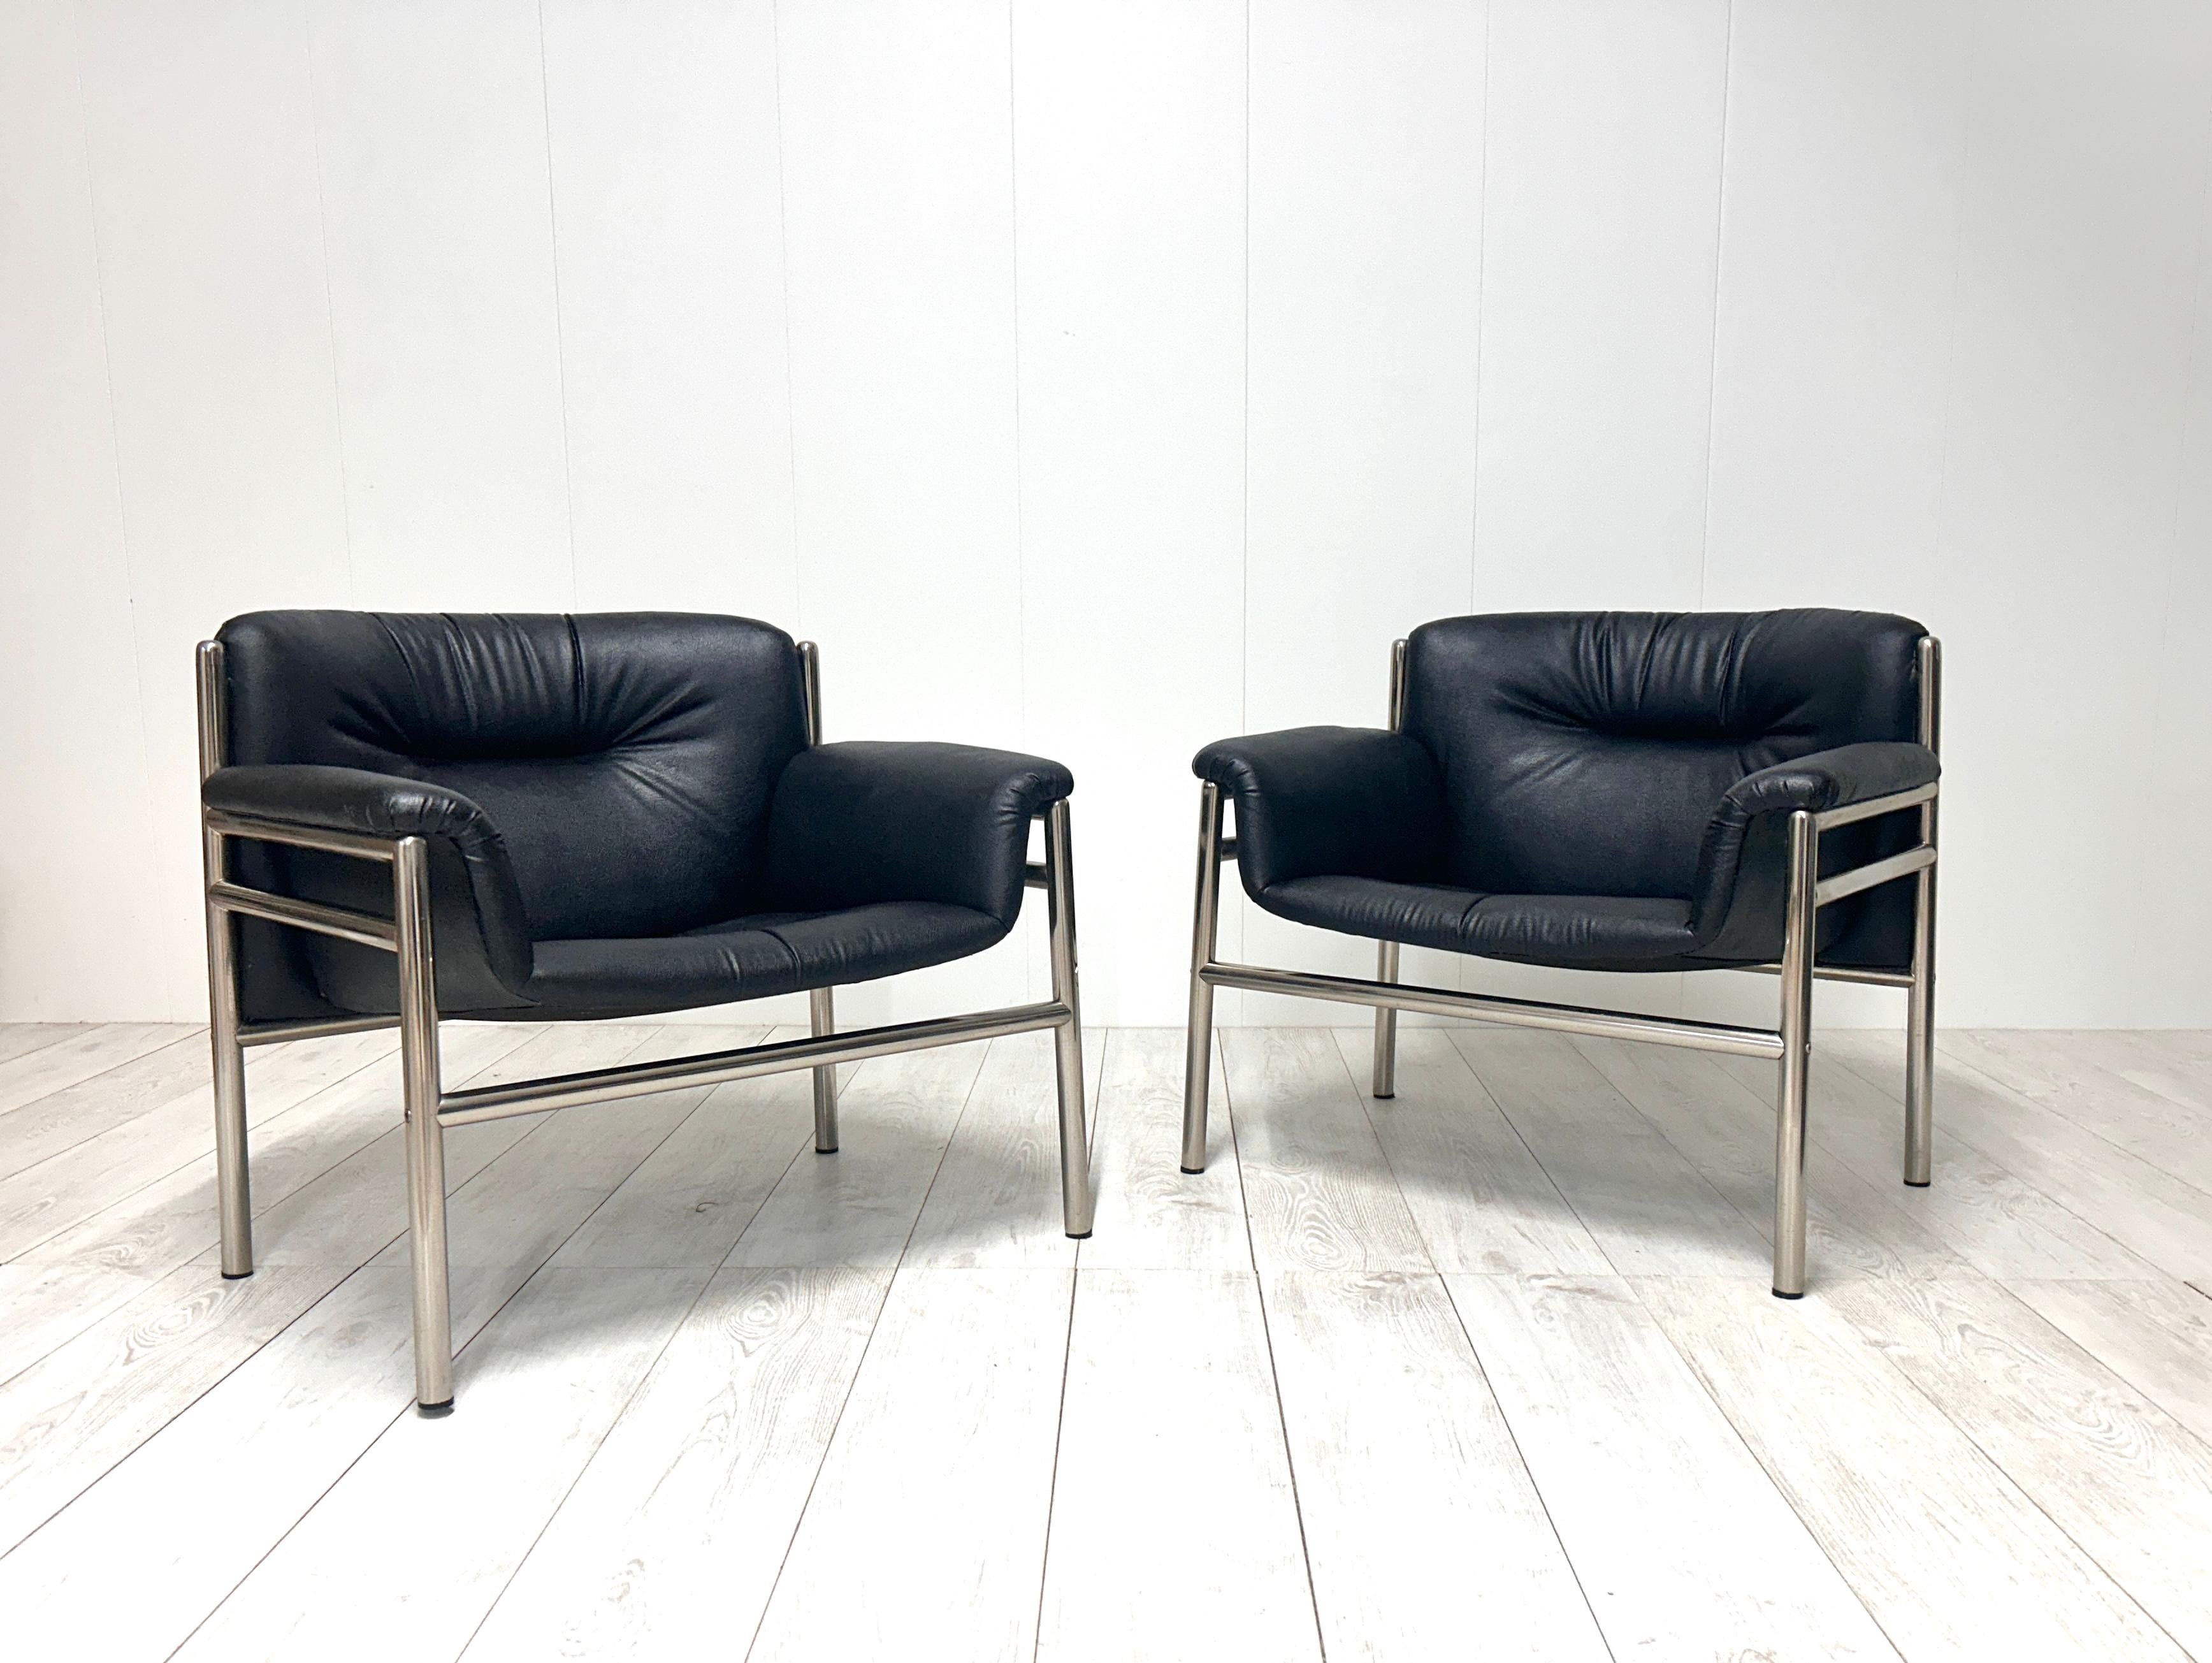 Curieuse paire de fauteuils avec structure en acier tubulaire, assise et dossier en cuir noir. 
Bon état général.
